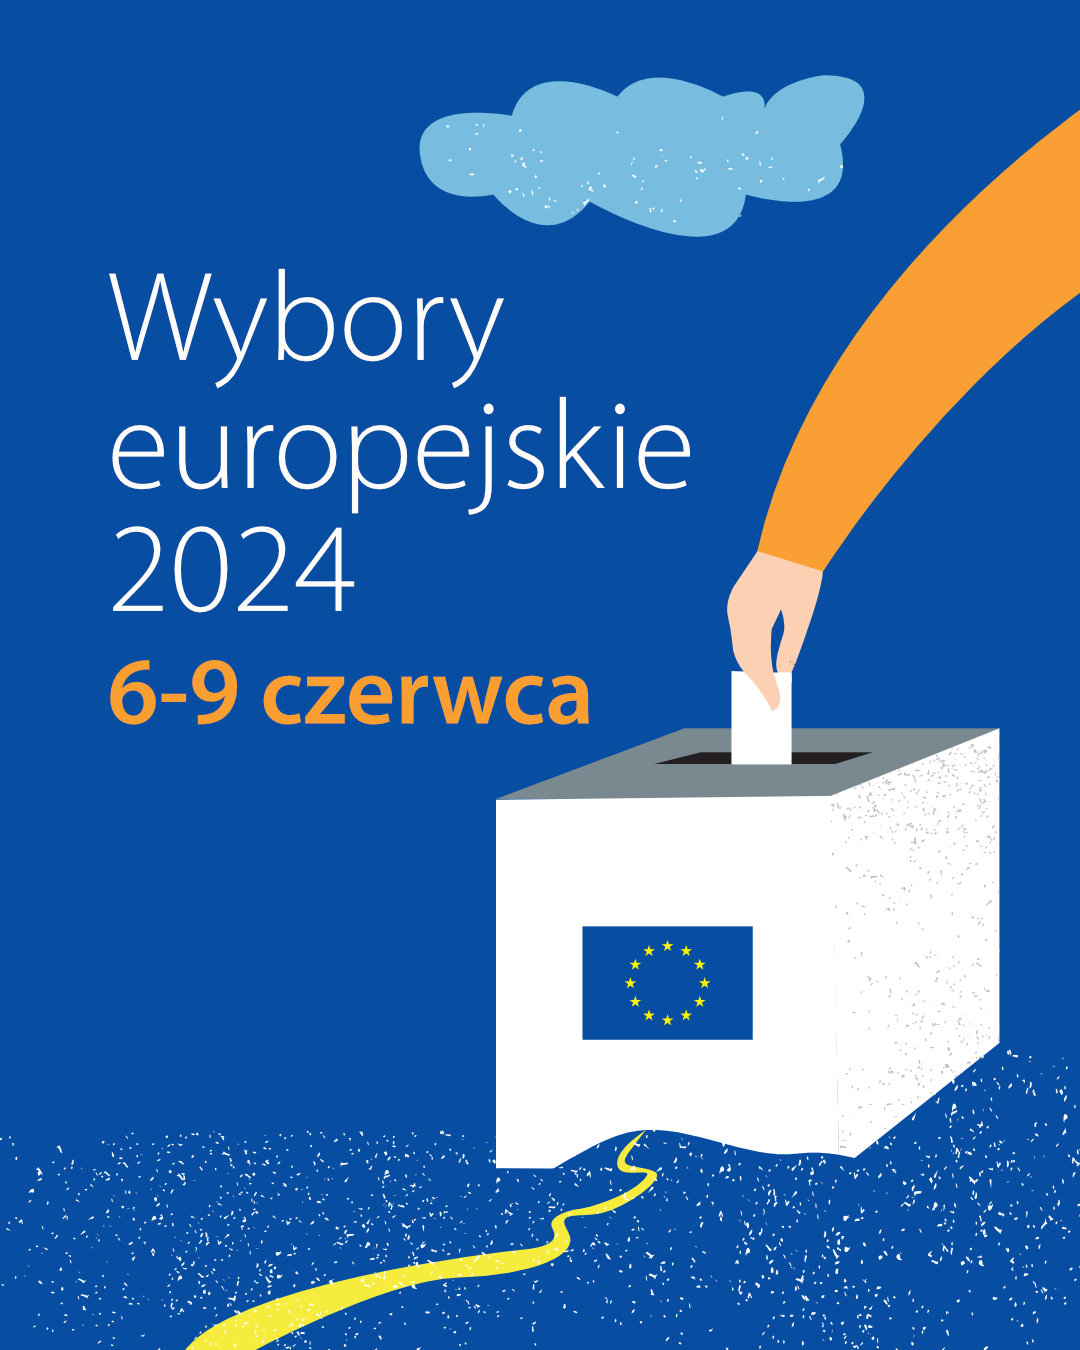 Wybory europejskie 2024 - 4:5